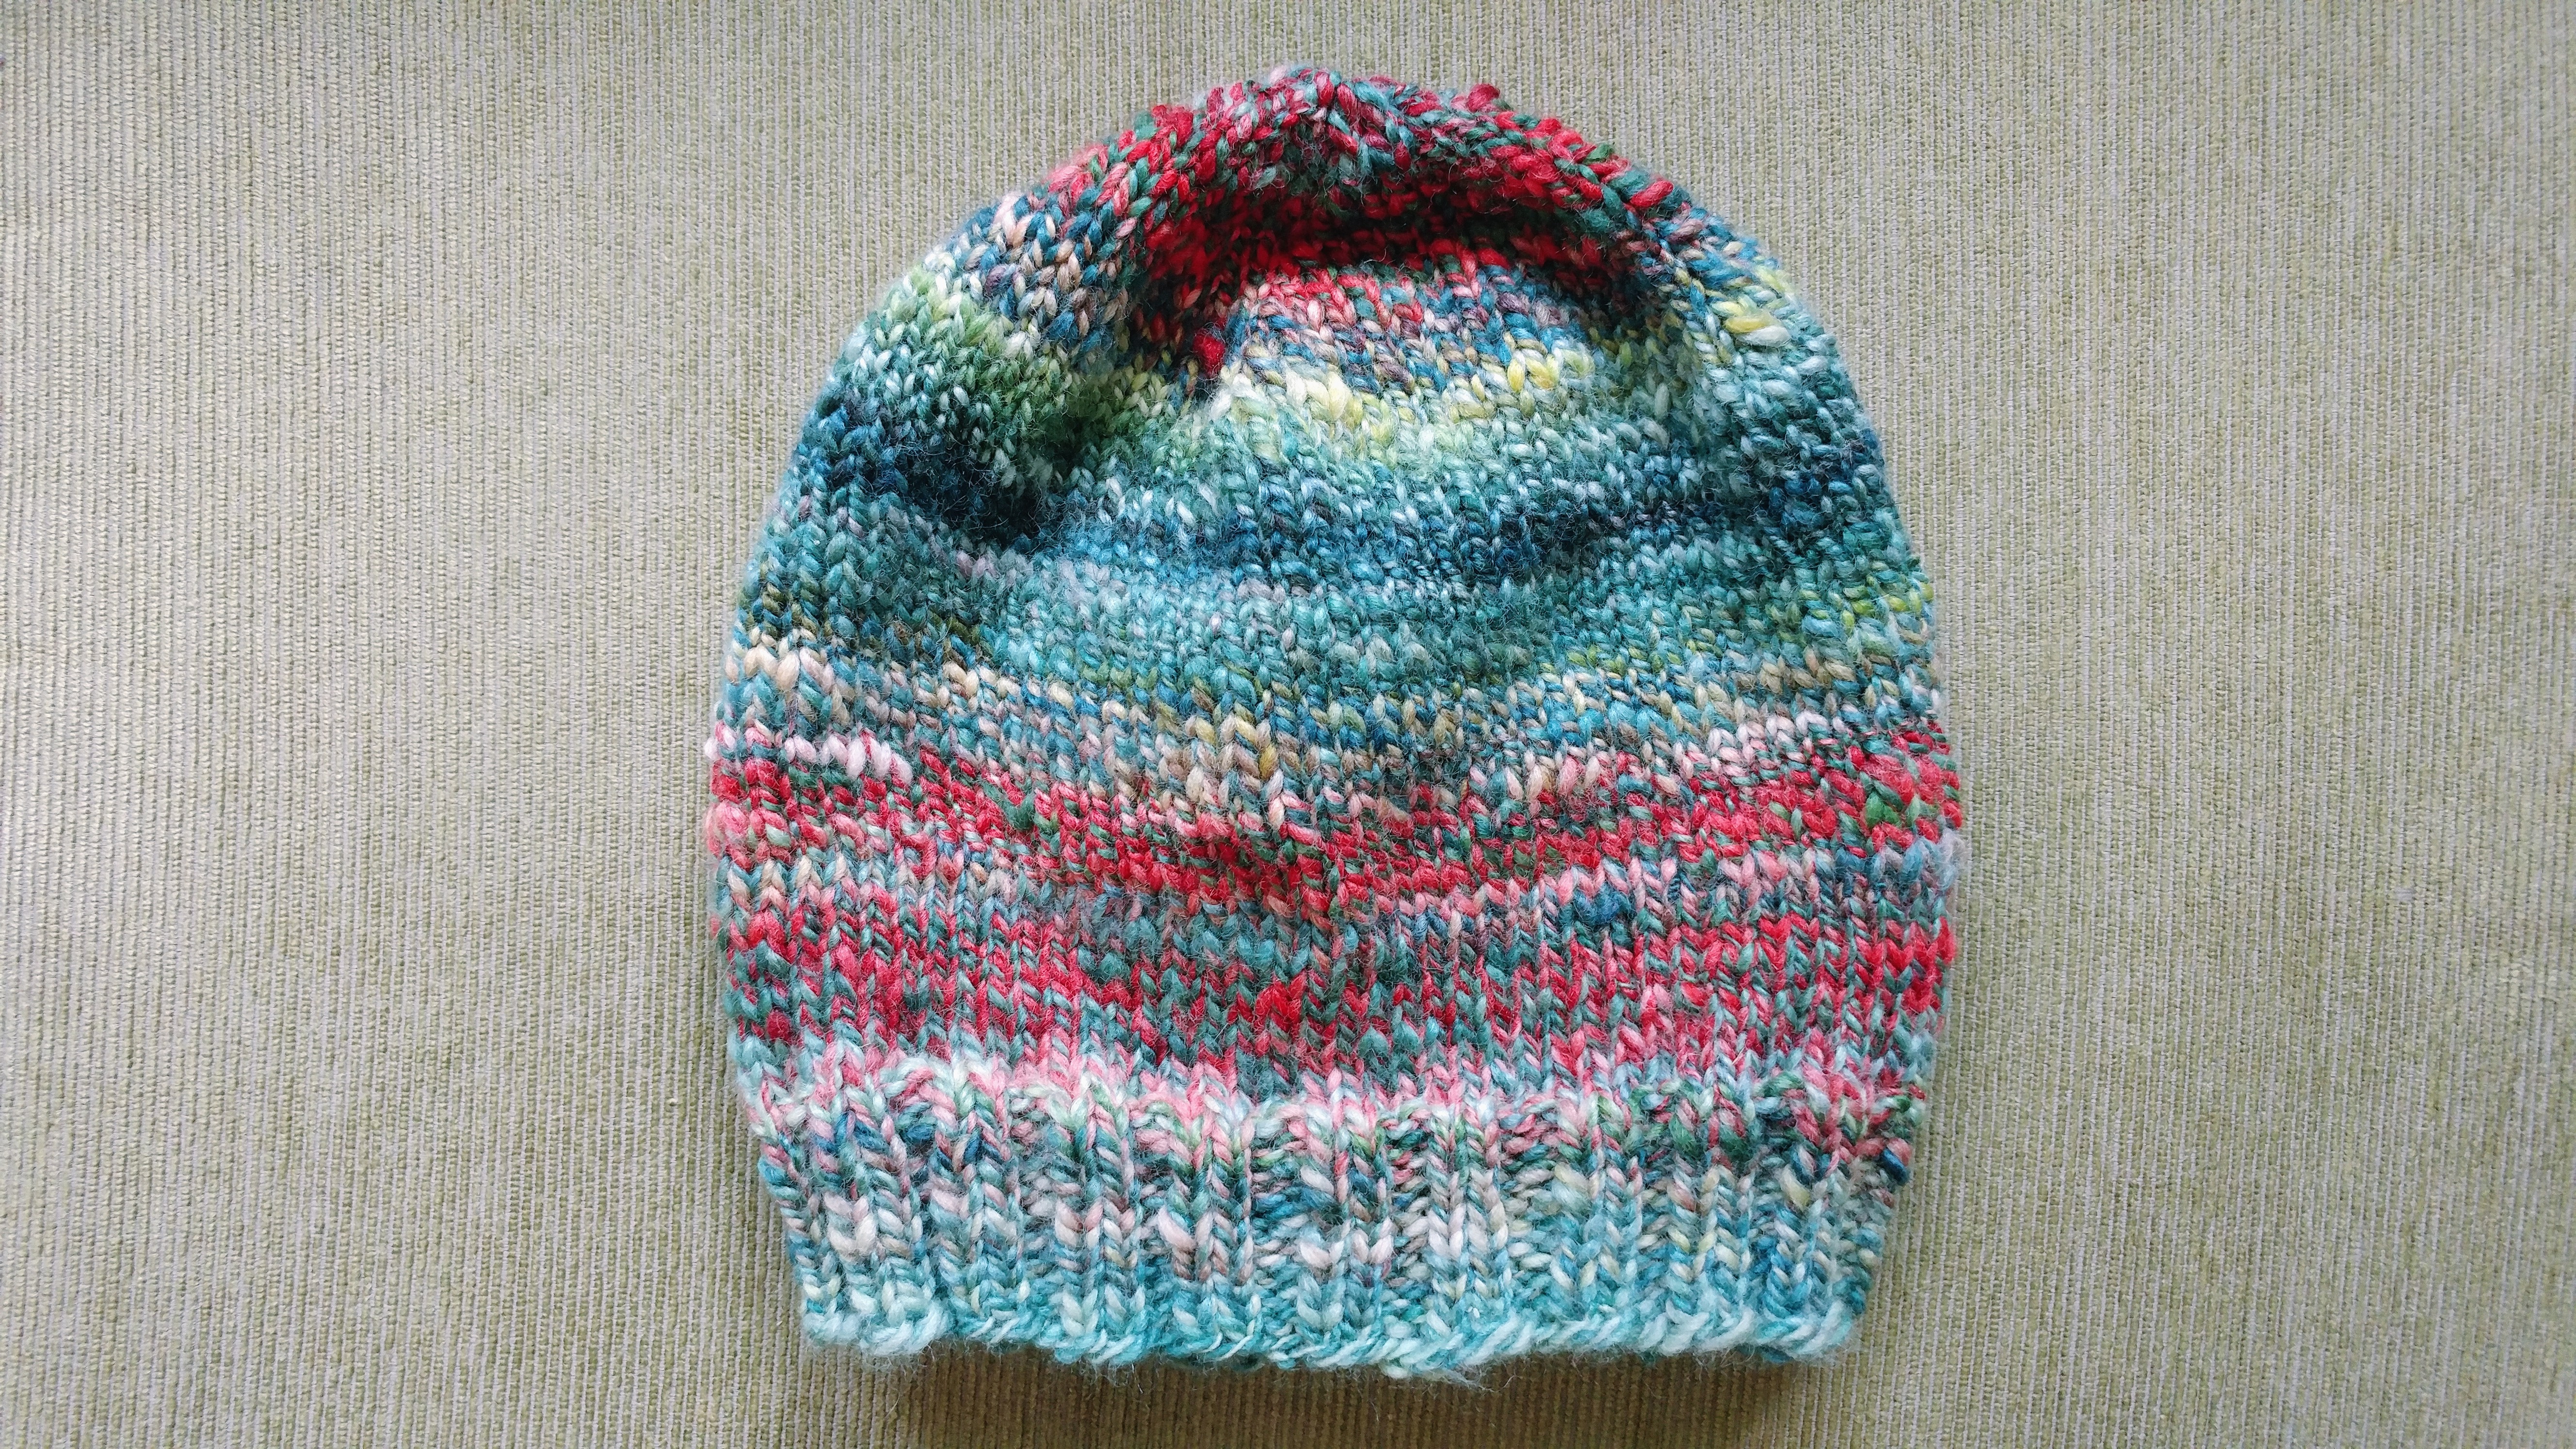 Hat knitted from handspun yarn! https://www.kimwerker.com/blog